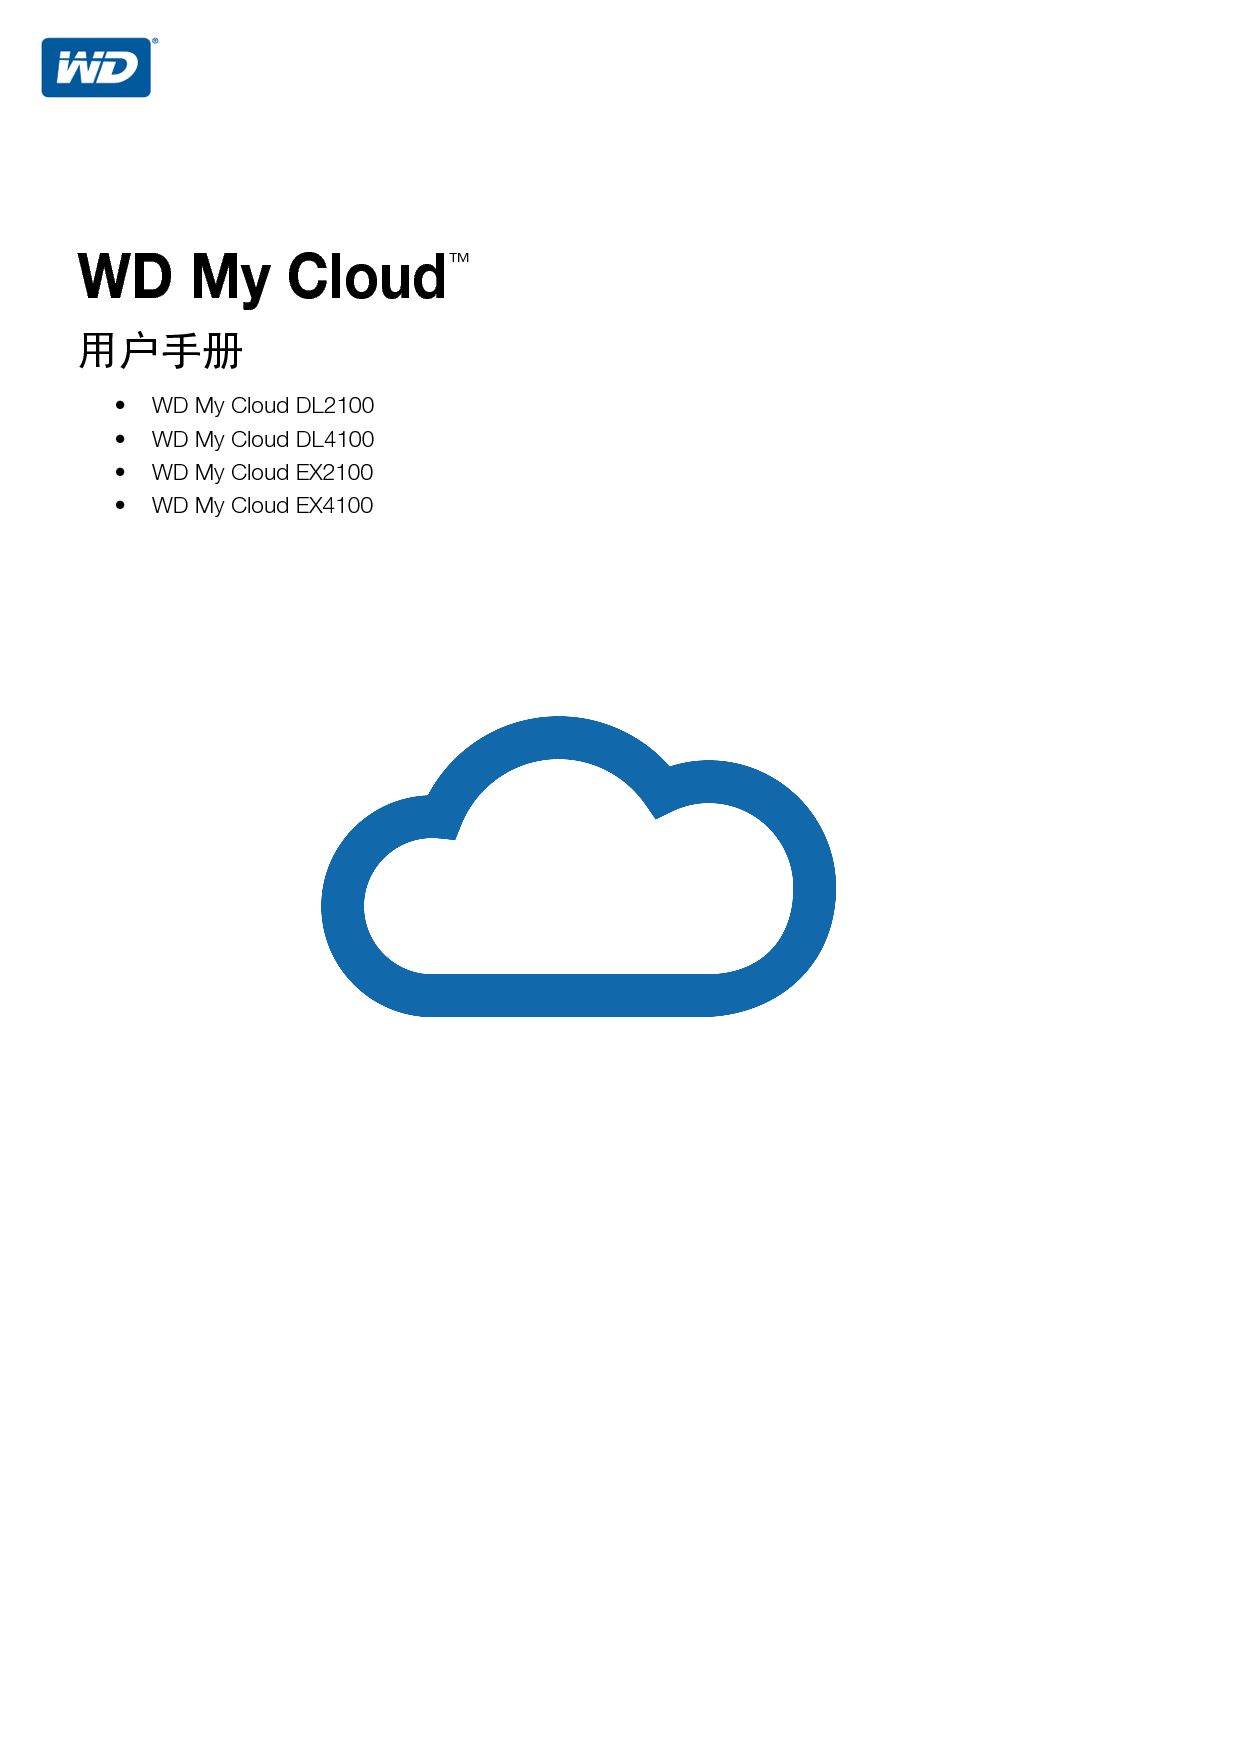 西部数据 Western Digital WD My Cloud DL2100 用户手册 封面